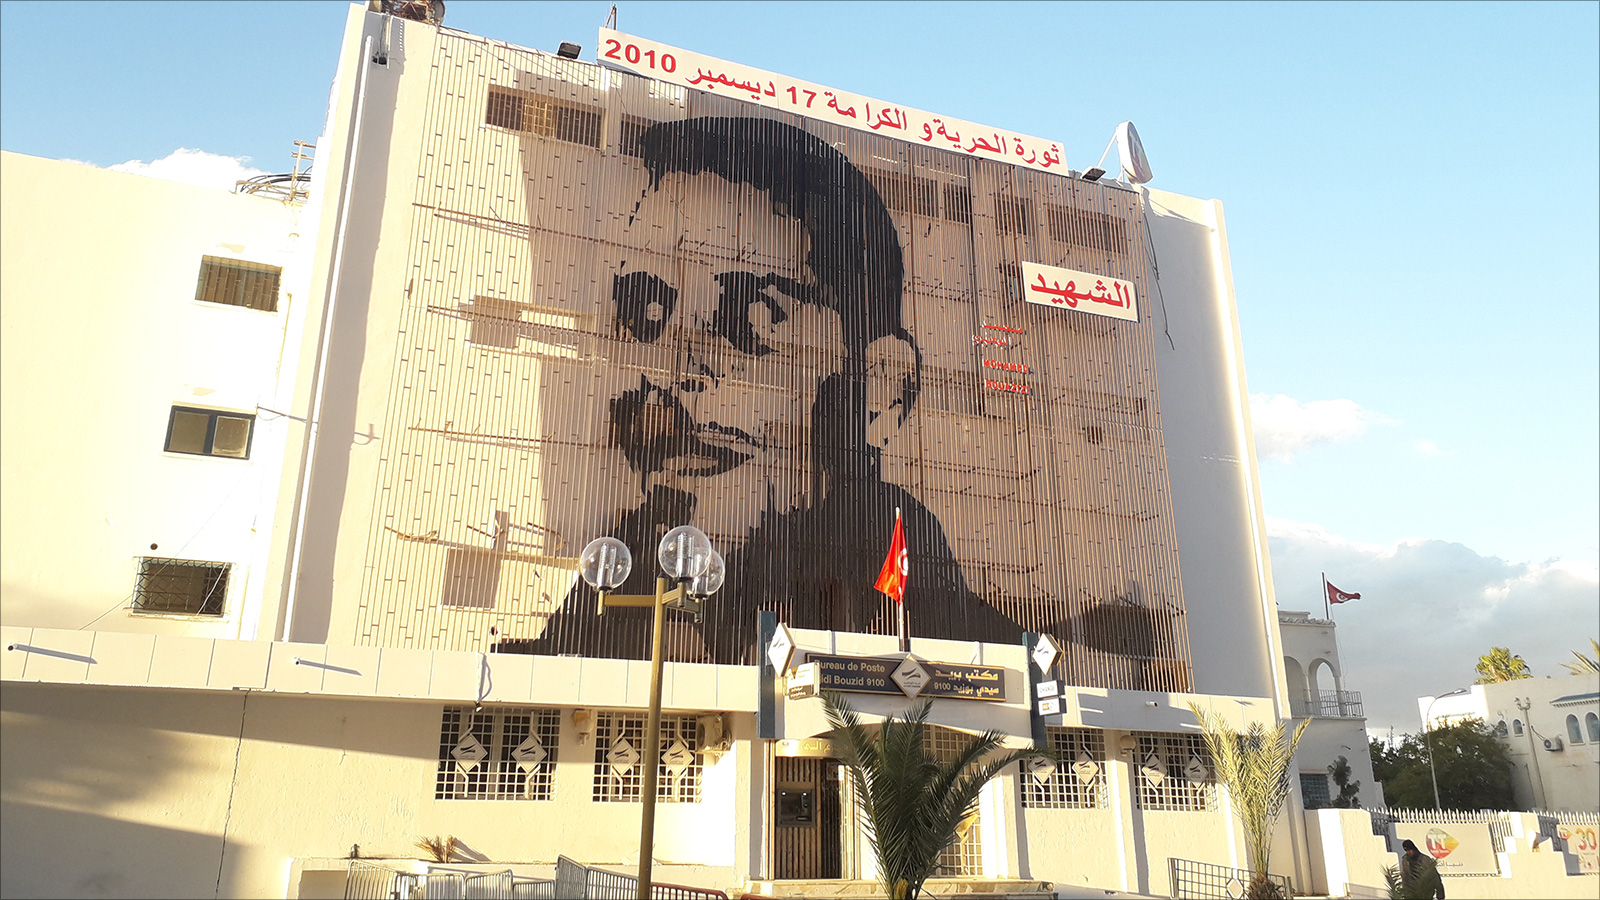 ‪صورة عملاقة لمحمد البوعزيزي رمز الثورة التونسية‬ (الجزيرة نت)